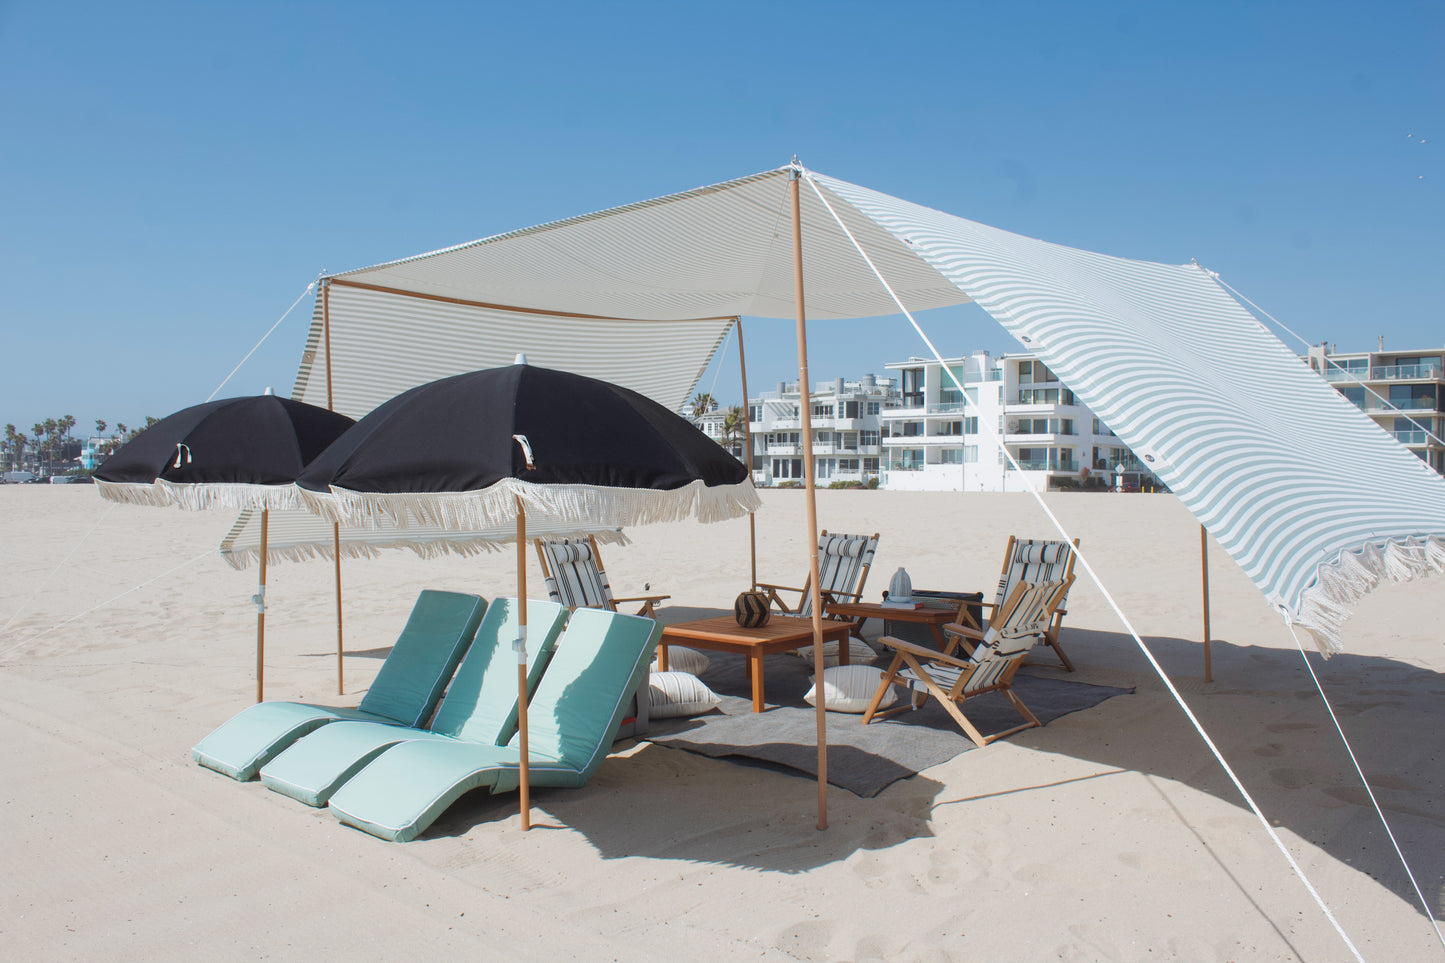 The Villa beach lounge event rental on Marina Del Rey beach in LA